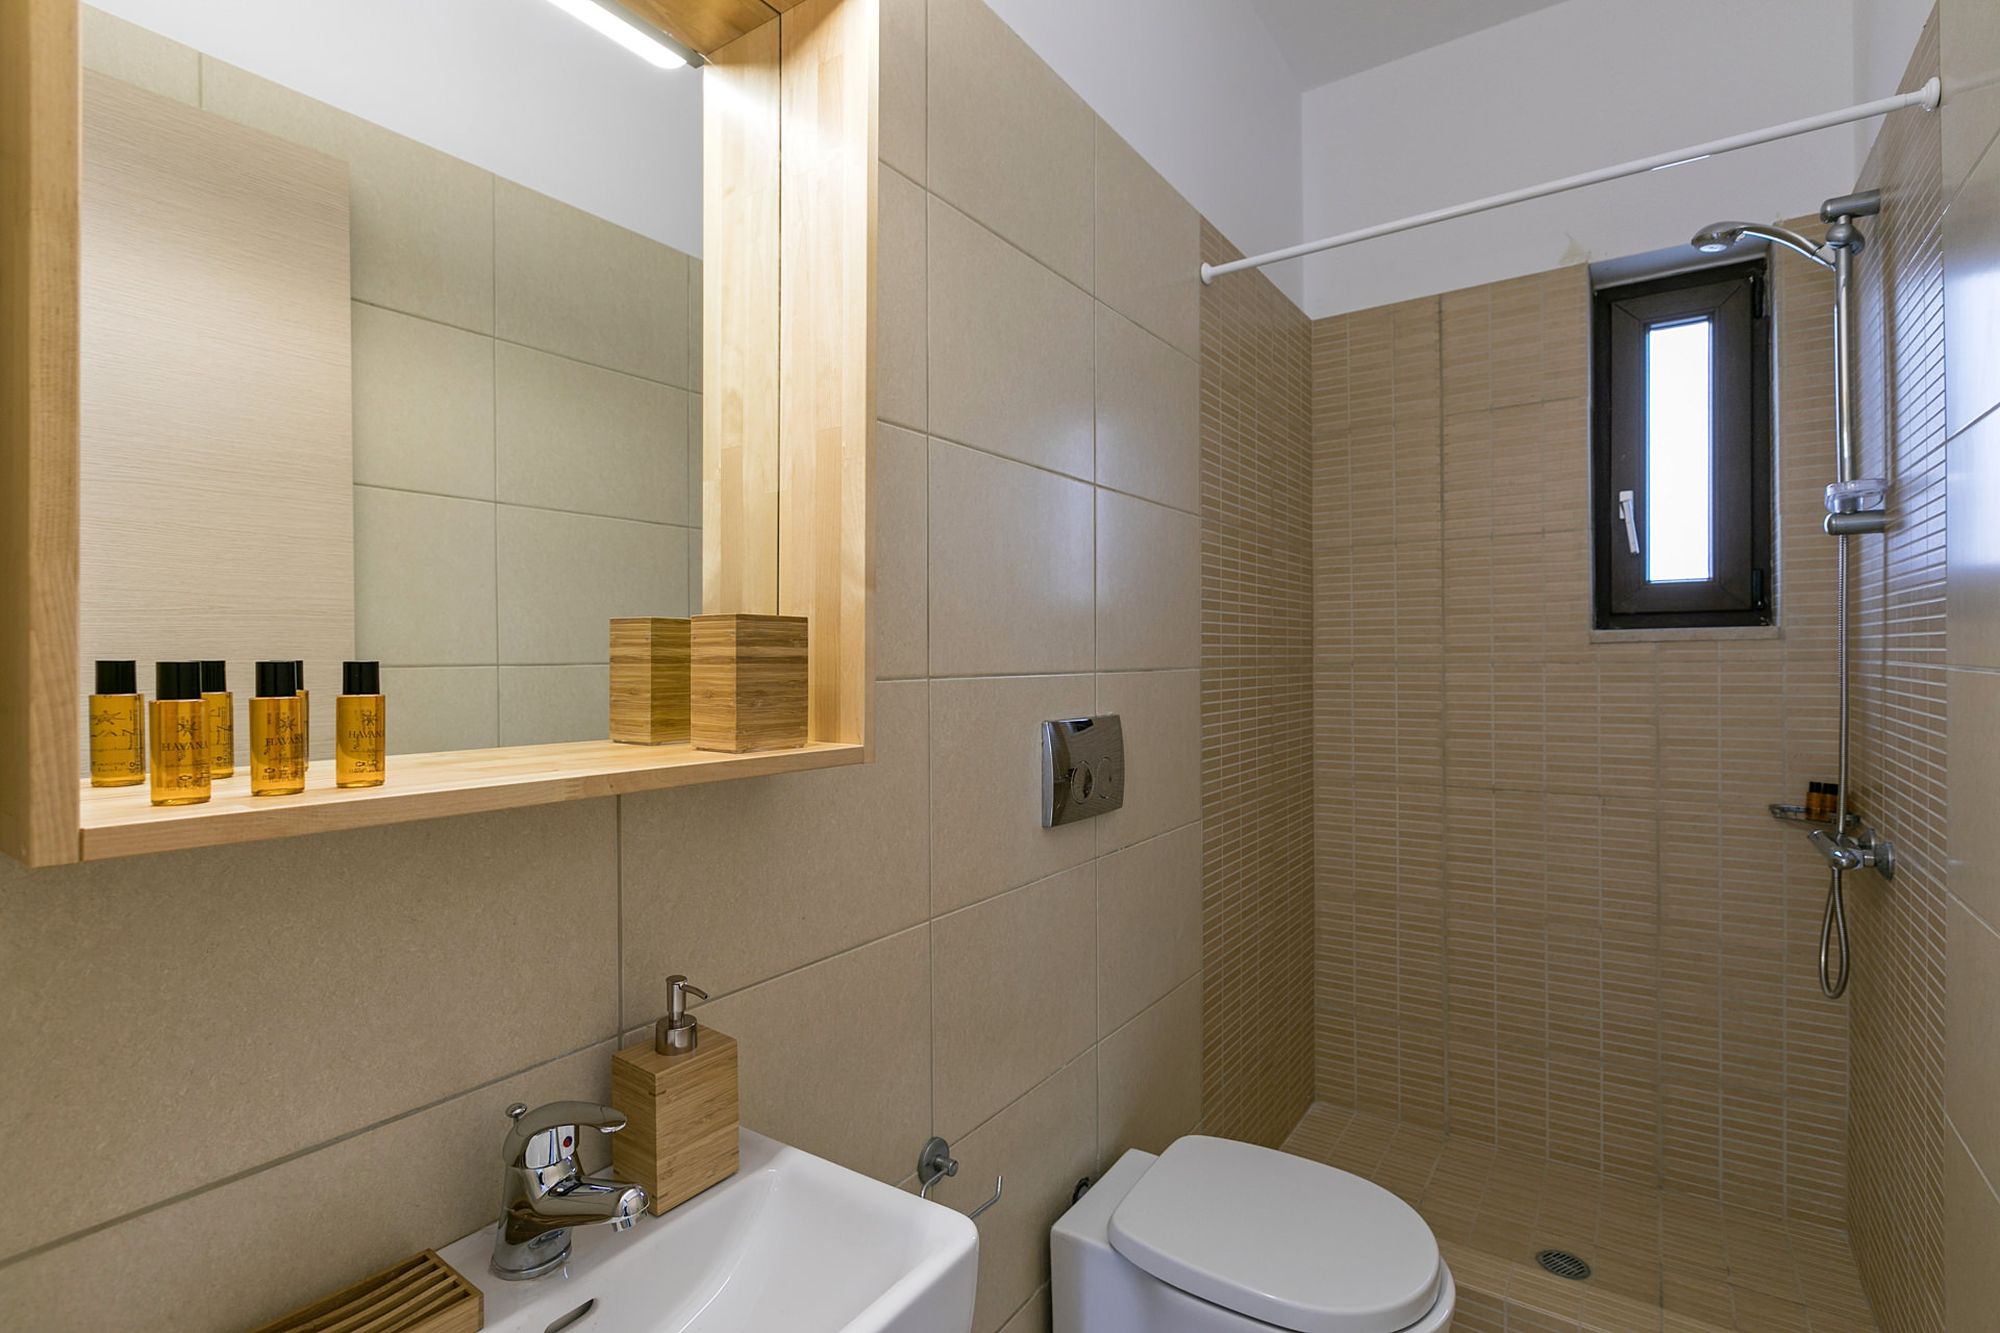 Μοντέρνο μπάνιο με ντουζιέρα και μεγάλο ξύλινο καθρέφτη πάνω από τον λευκό νιπτήρα.